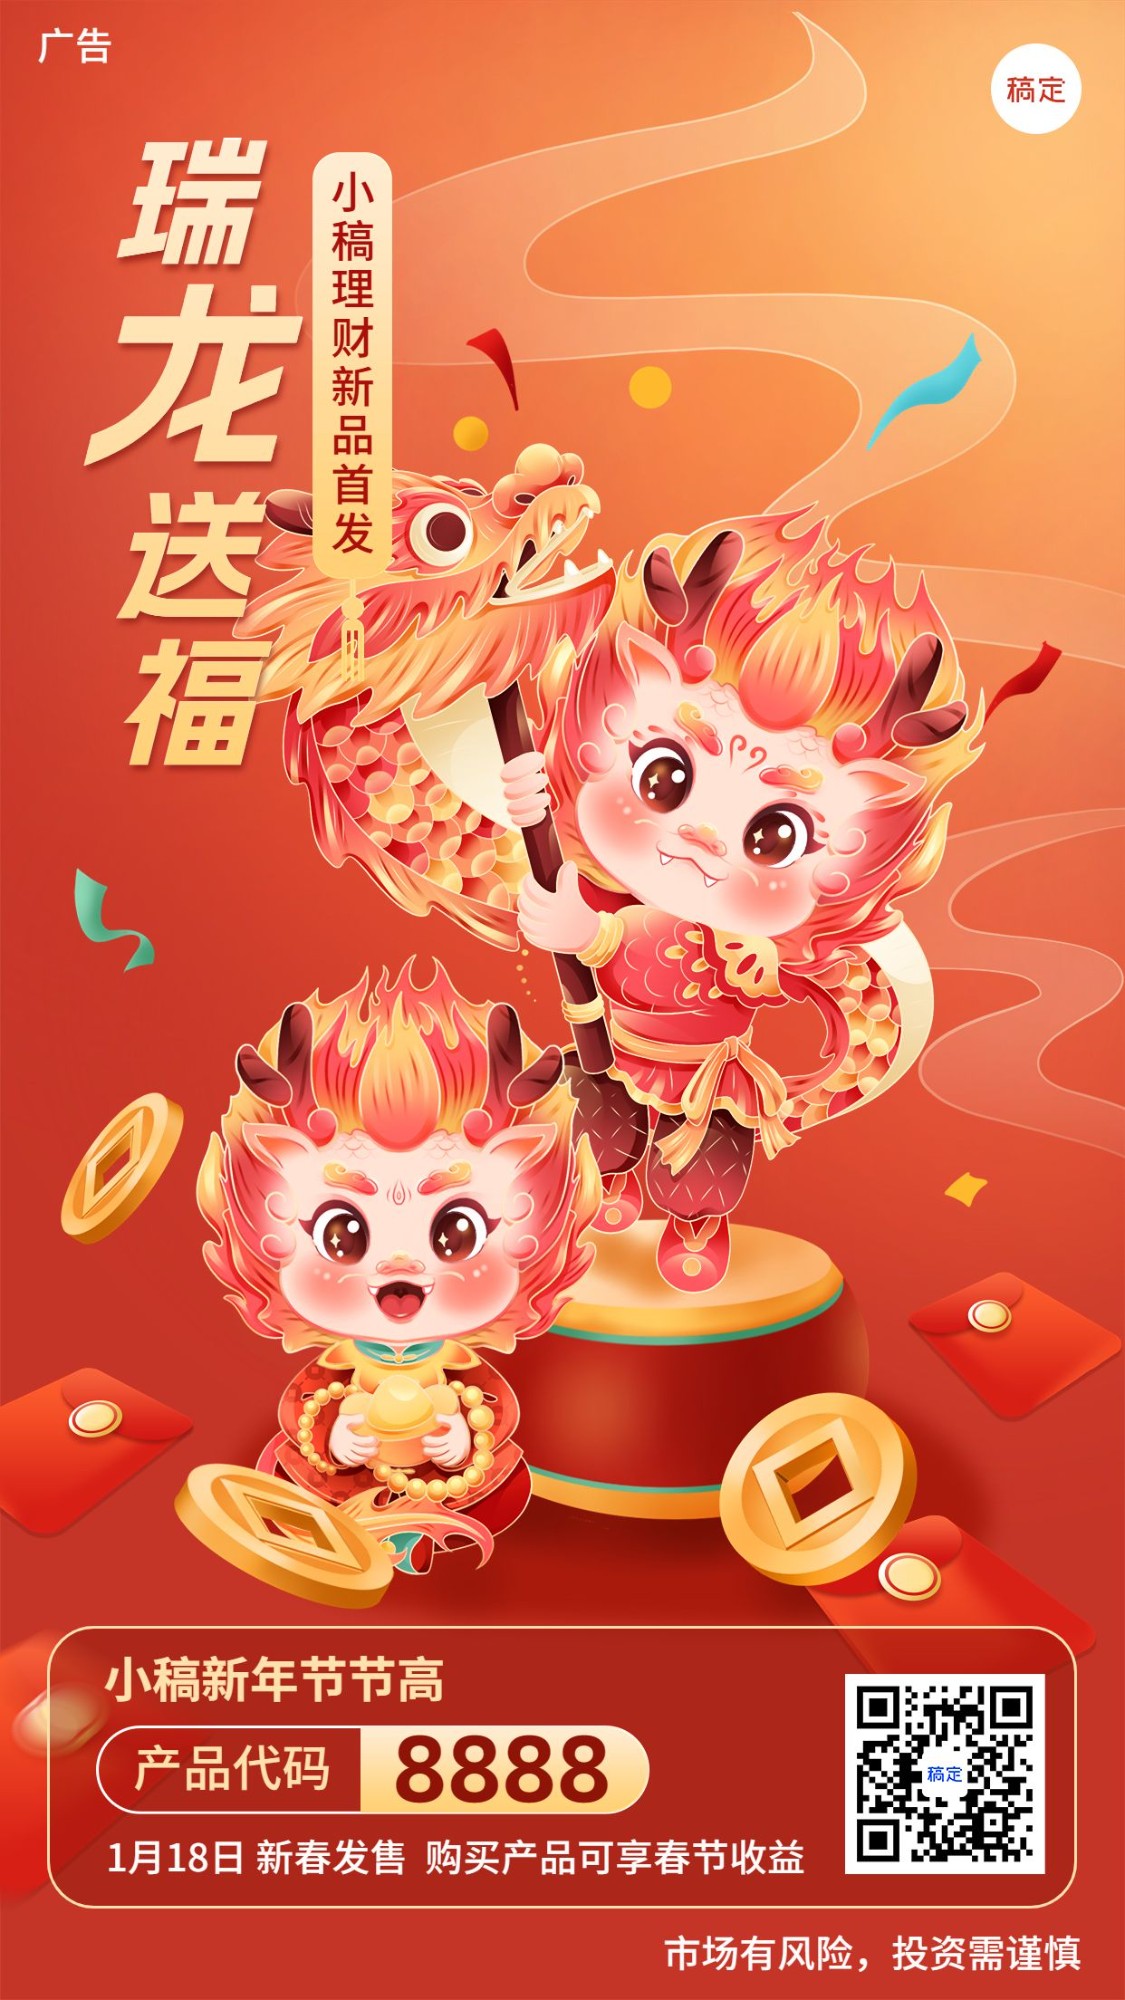 春节龙年金融保险节日祝福理财产品营销创意插画手机海报